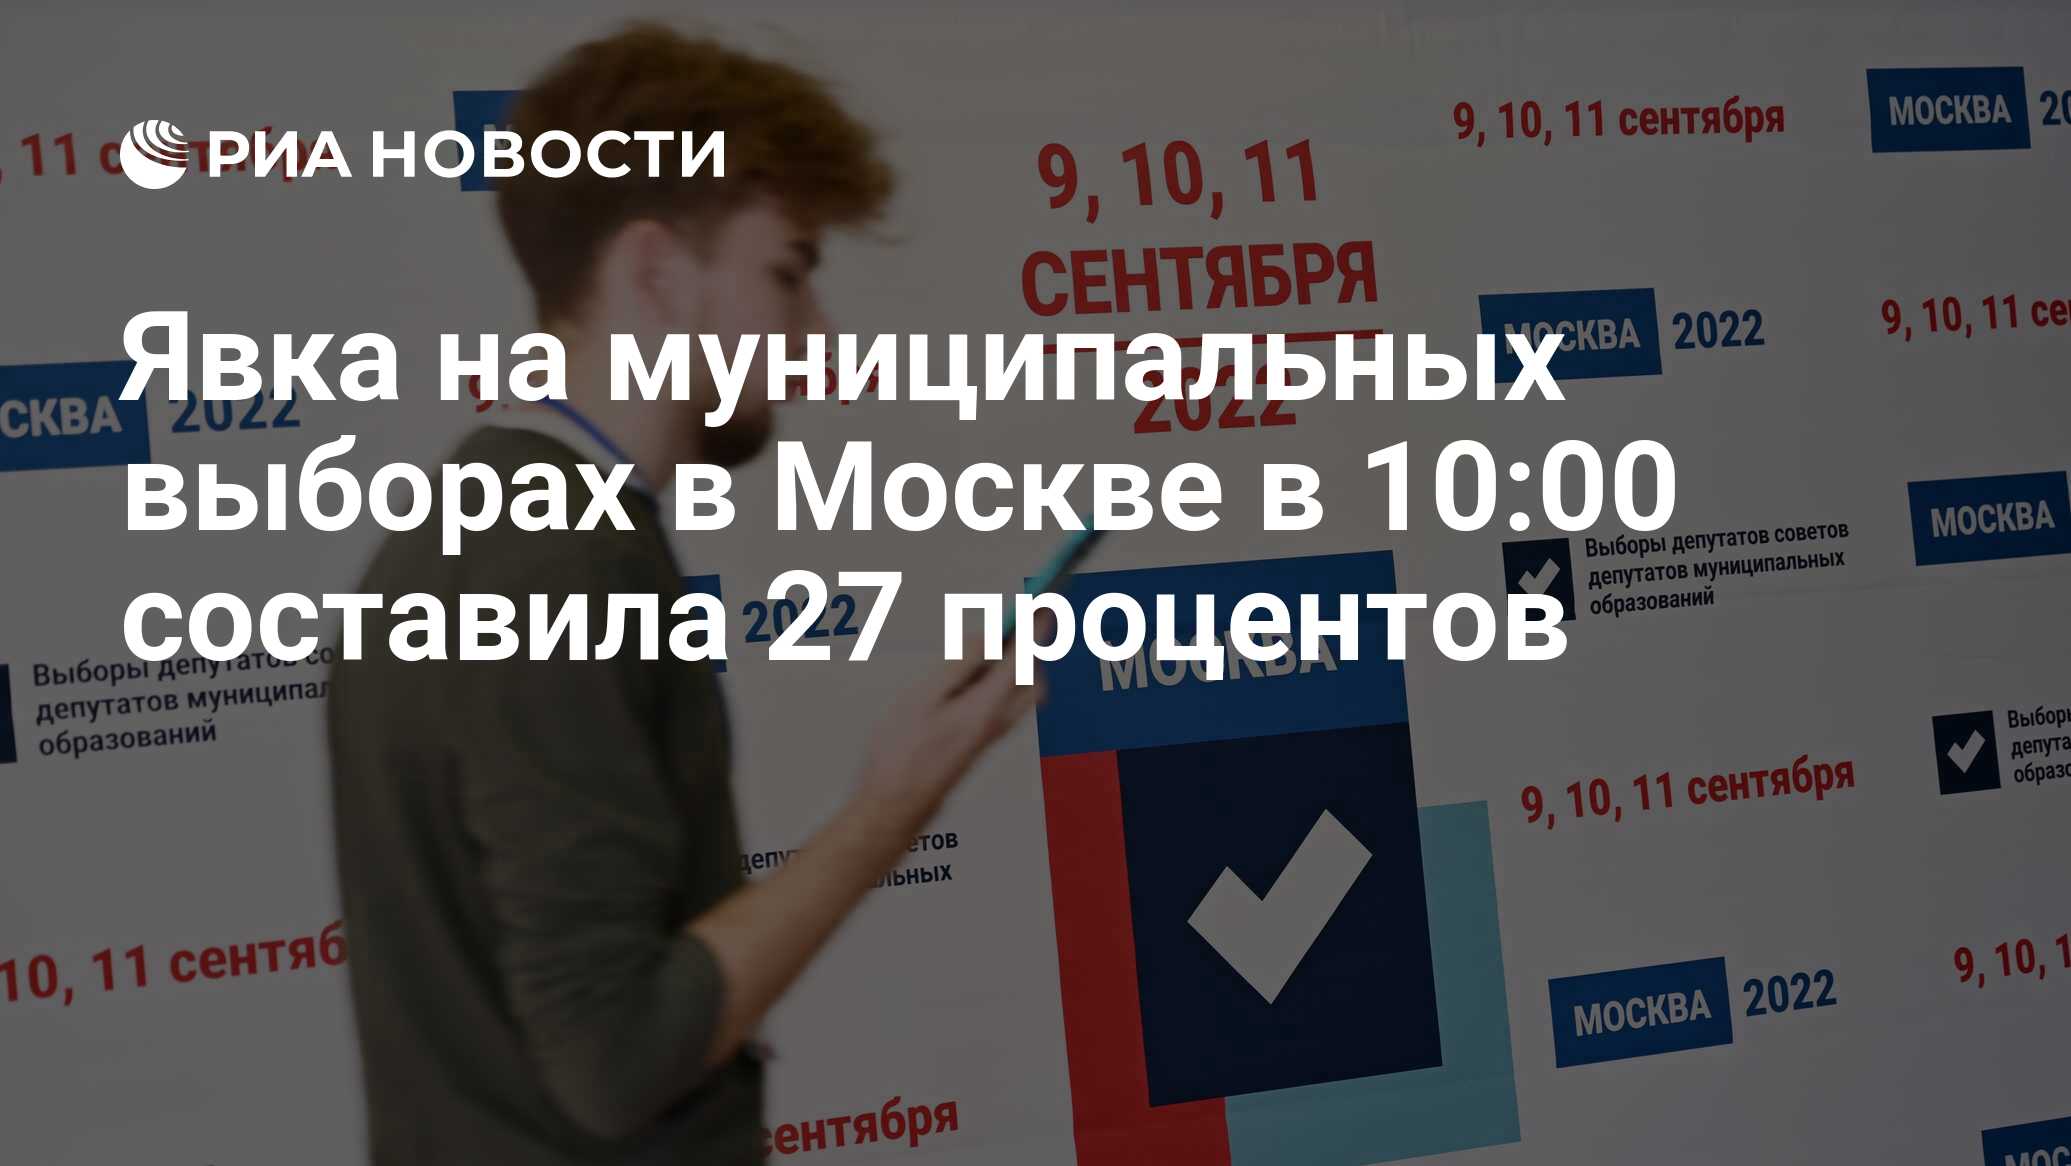 Явка на выборах в Москве. Единый день голосования 2022. Единый день голосования 2022 картинки. Выборы в 2022 году в России.